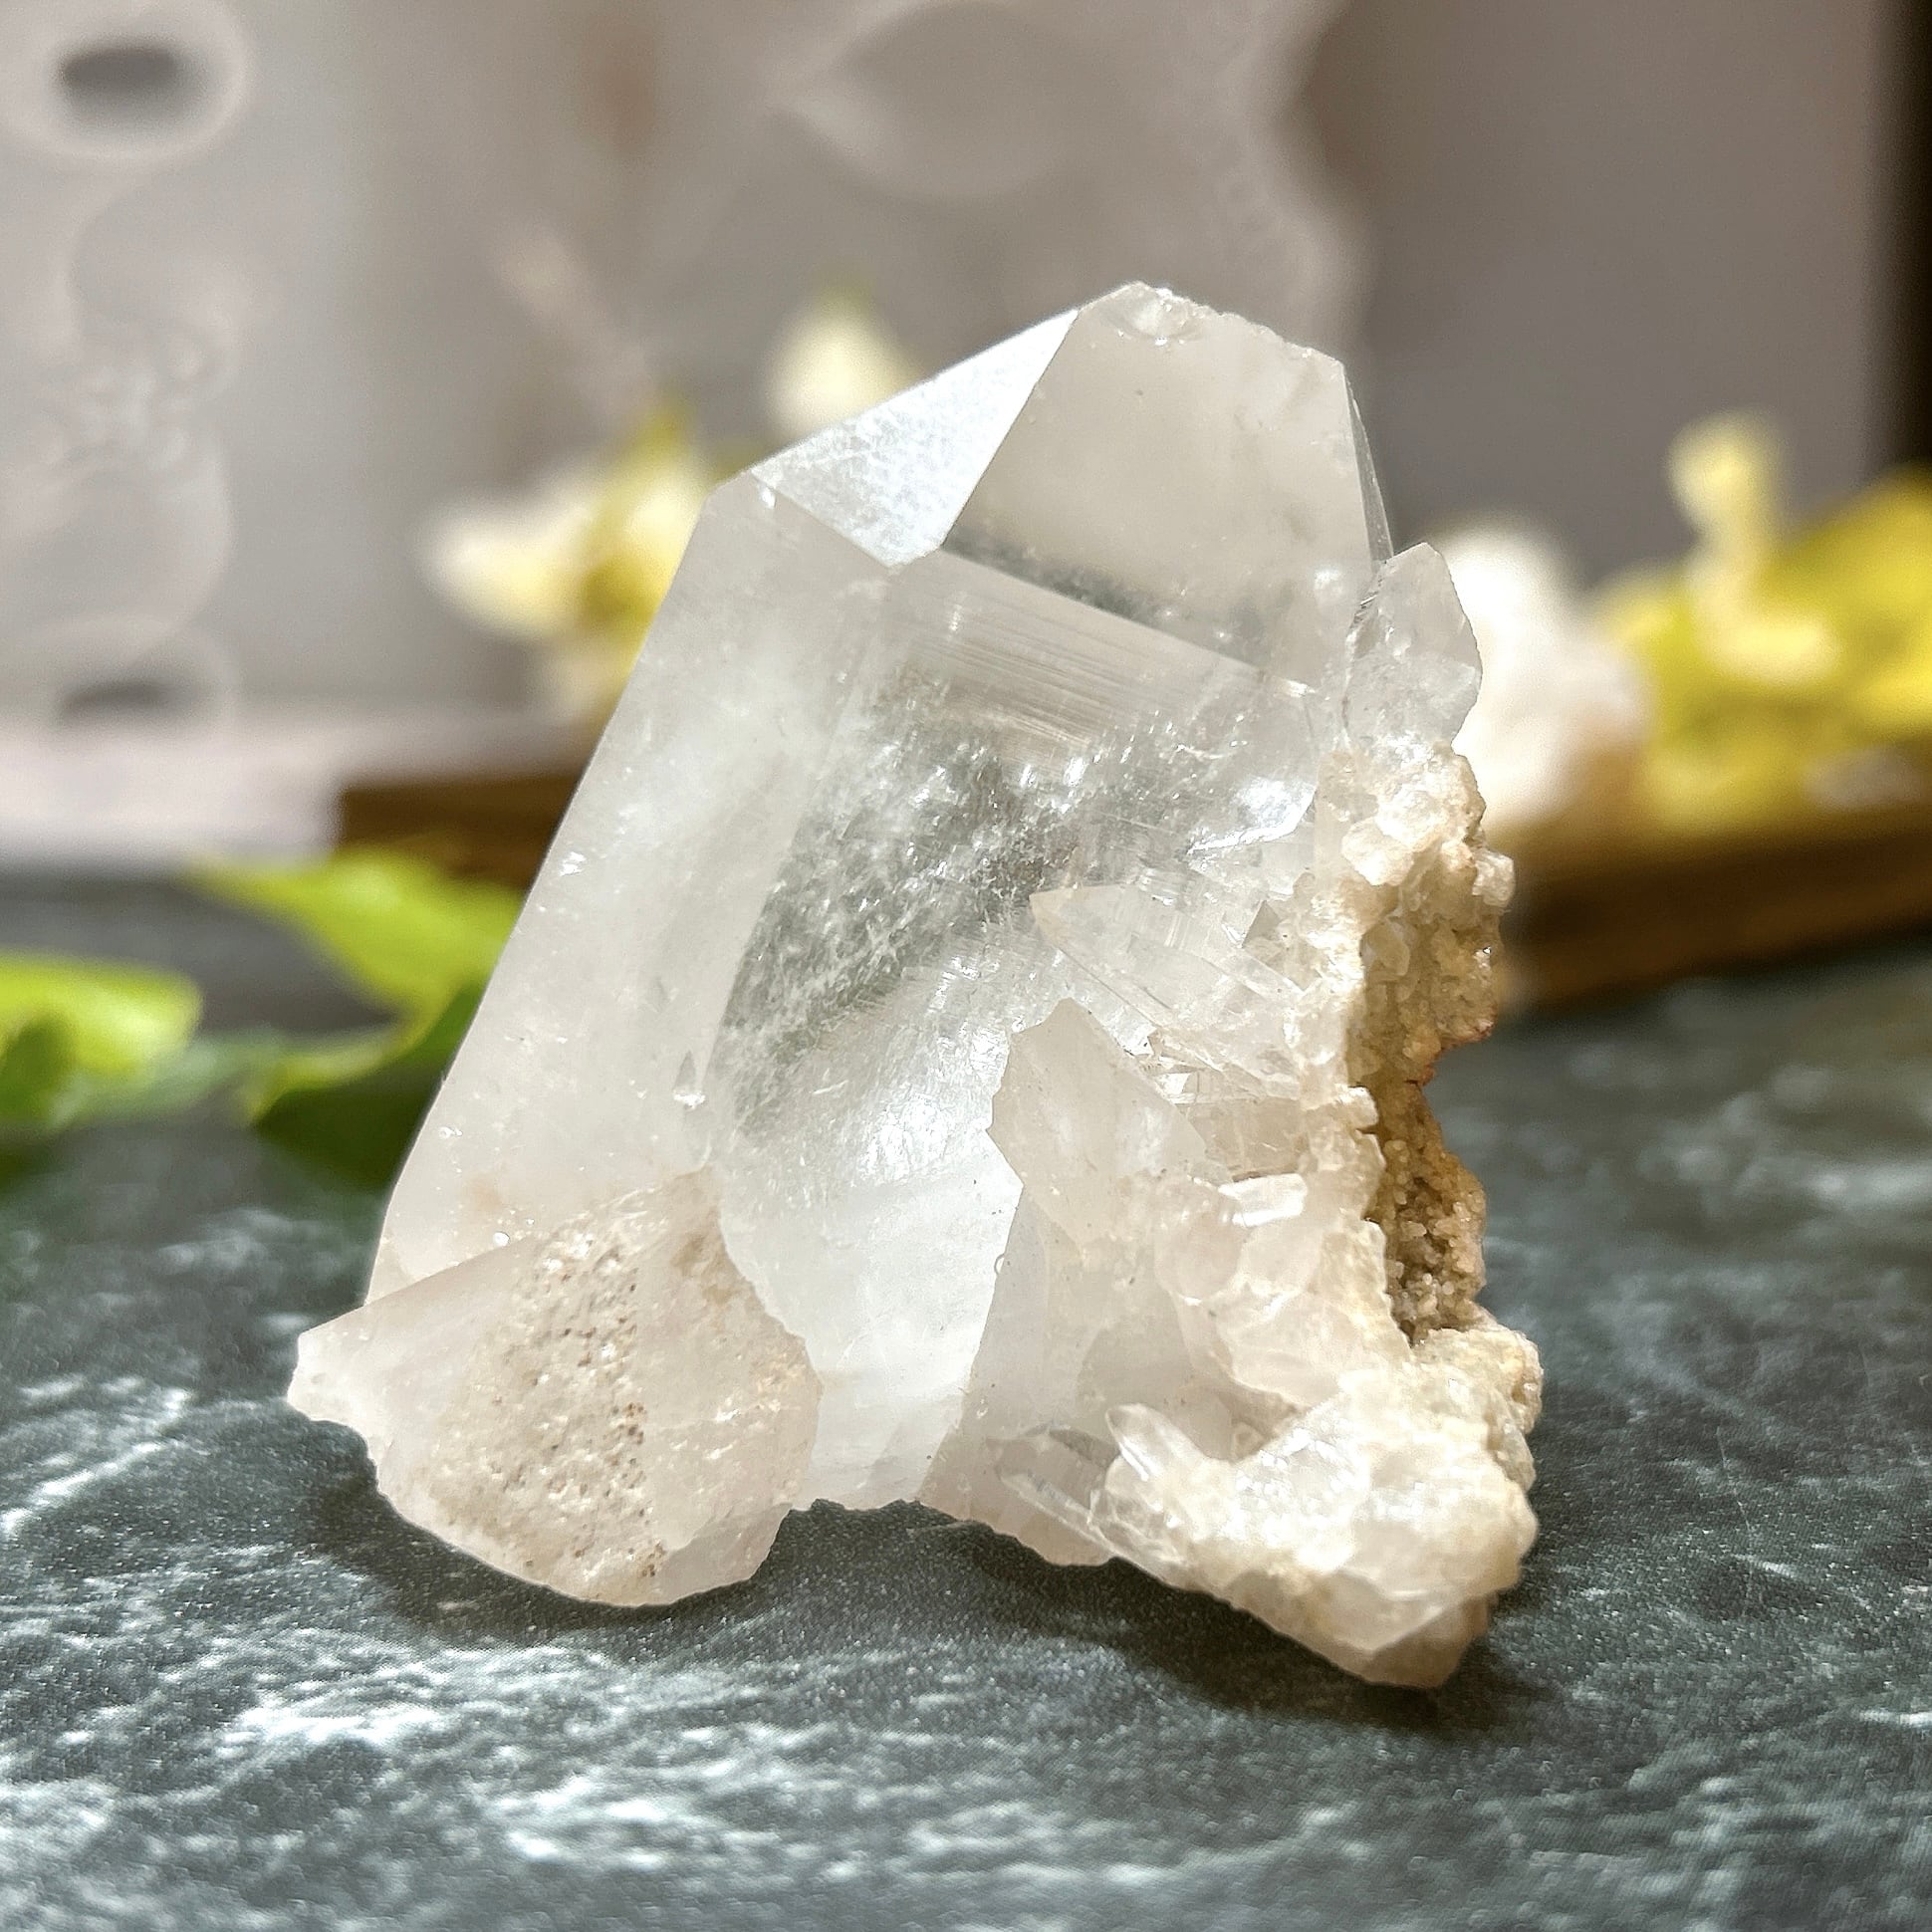 ヒマラヤ産 水晶クラスター 原石